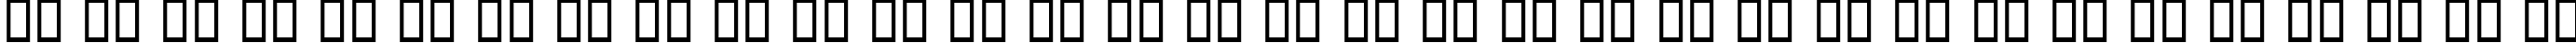 Пример написания русского алфавита шрифтом Bolide MF